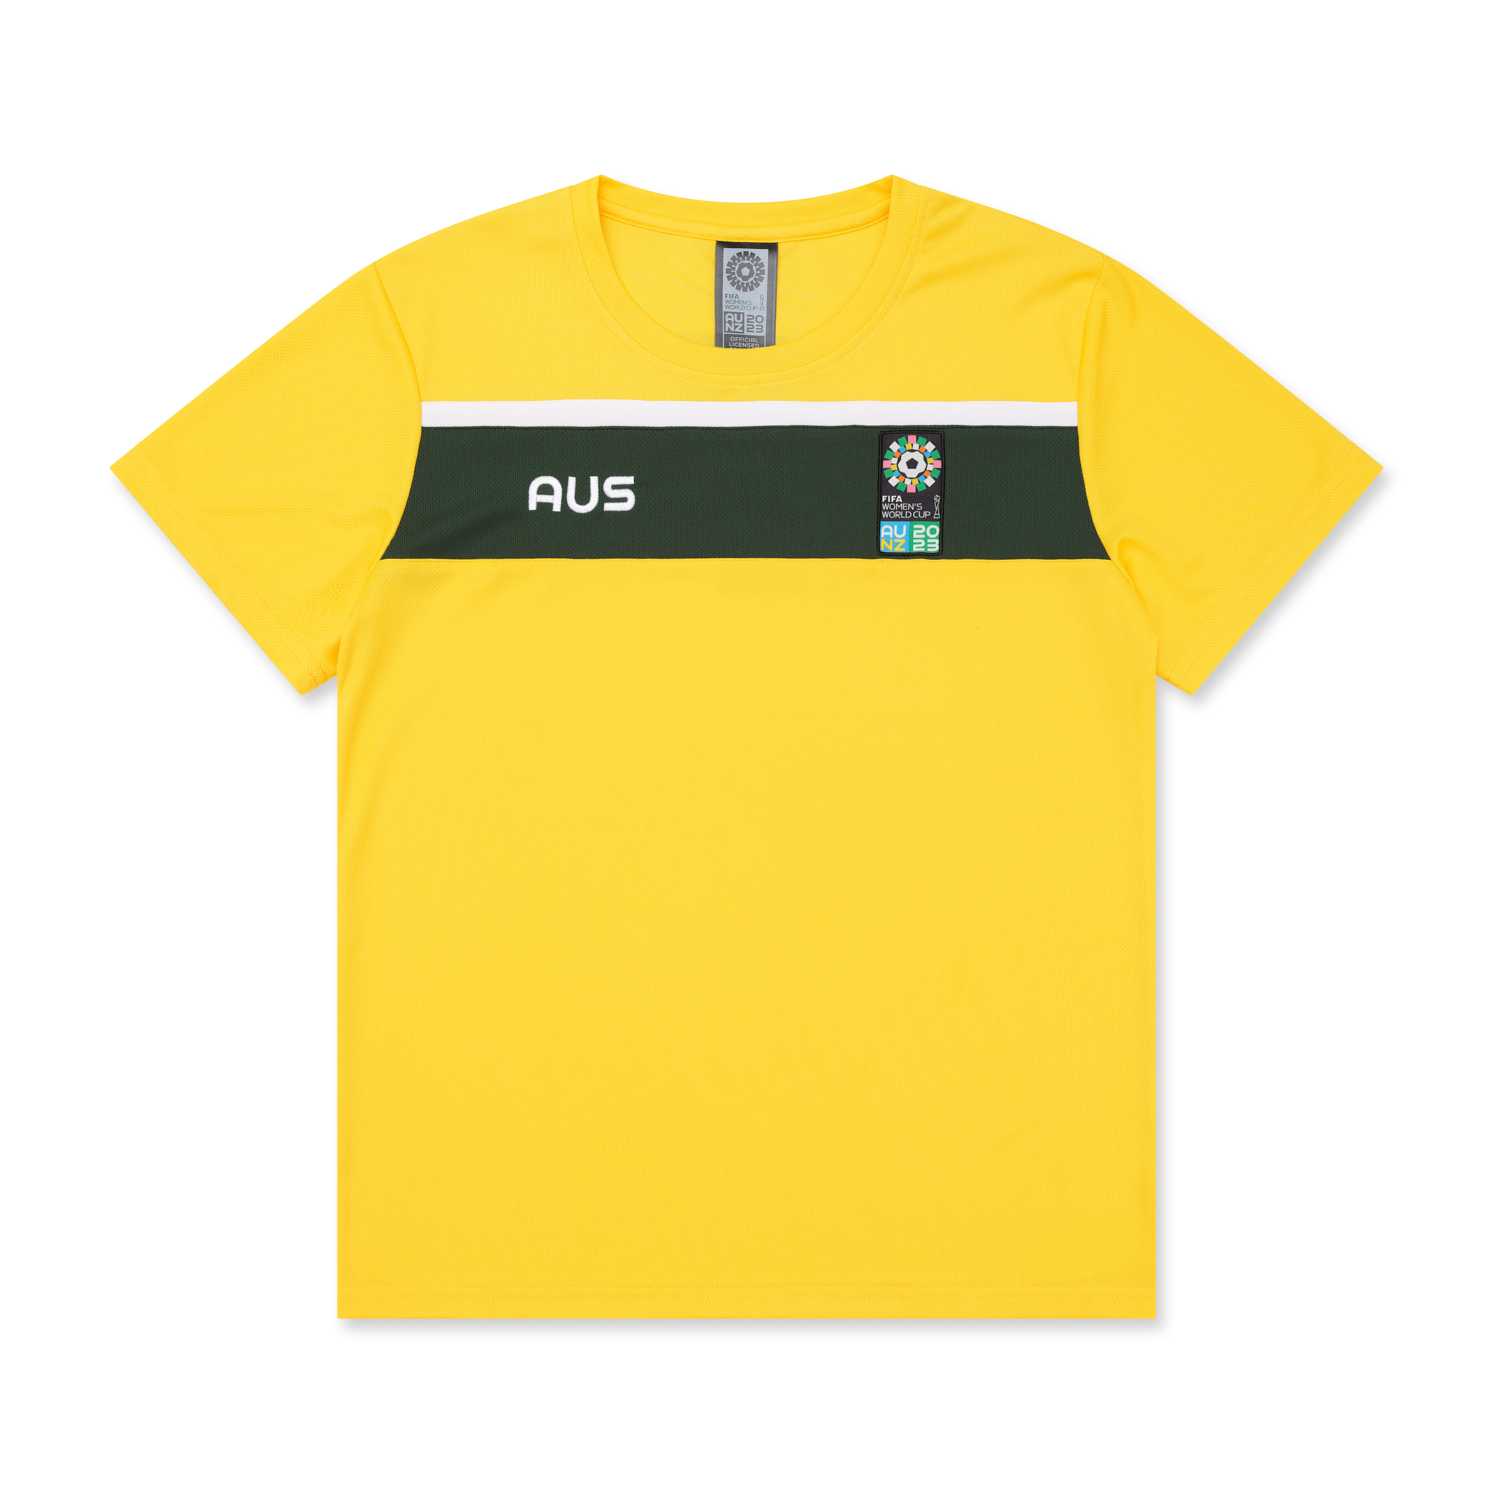 Australia Women's World Cup 2023 Multicolour T-Shirt - Unisex